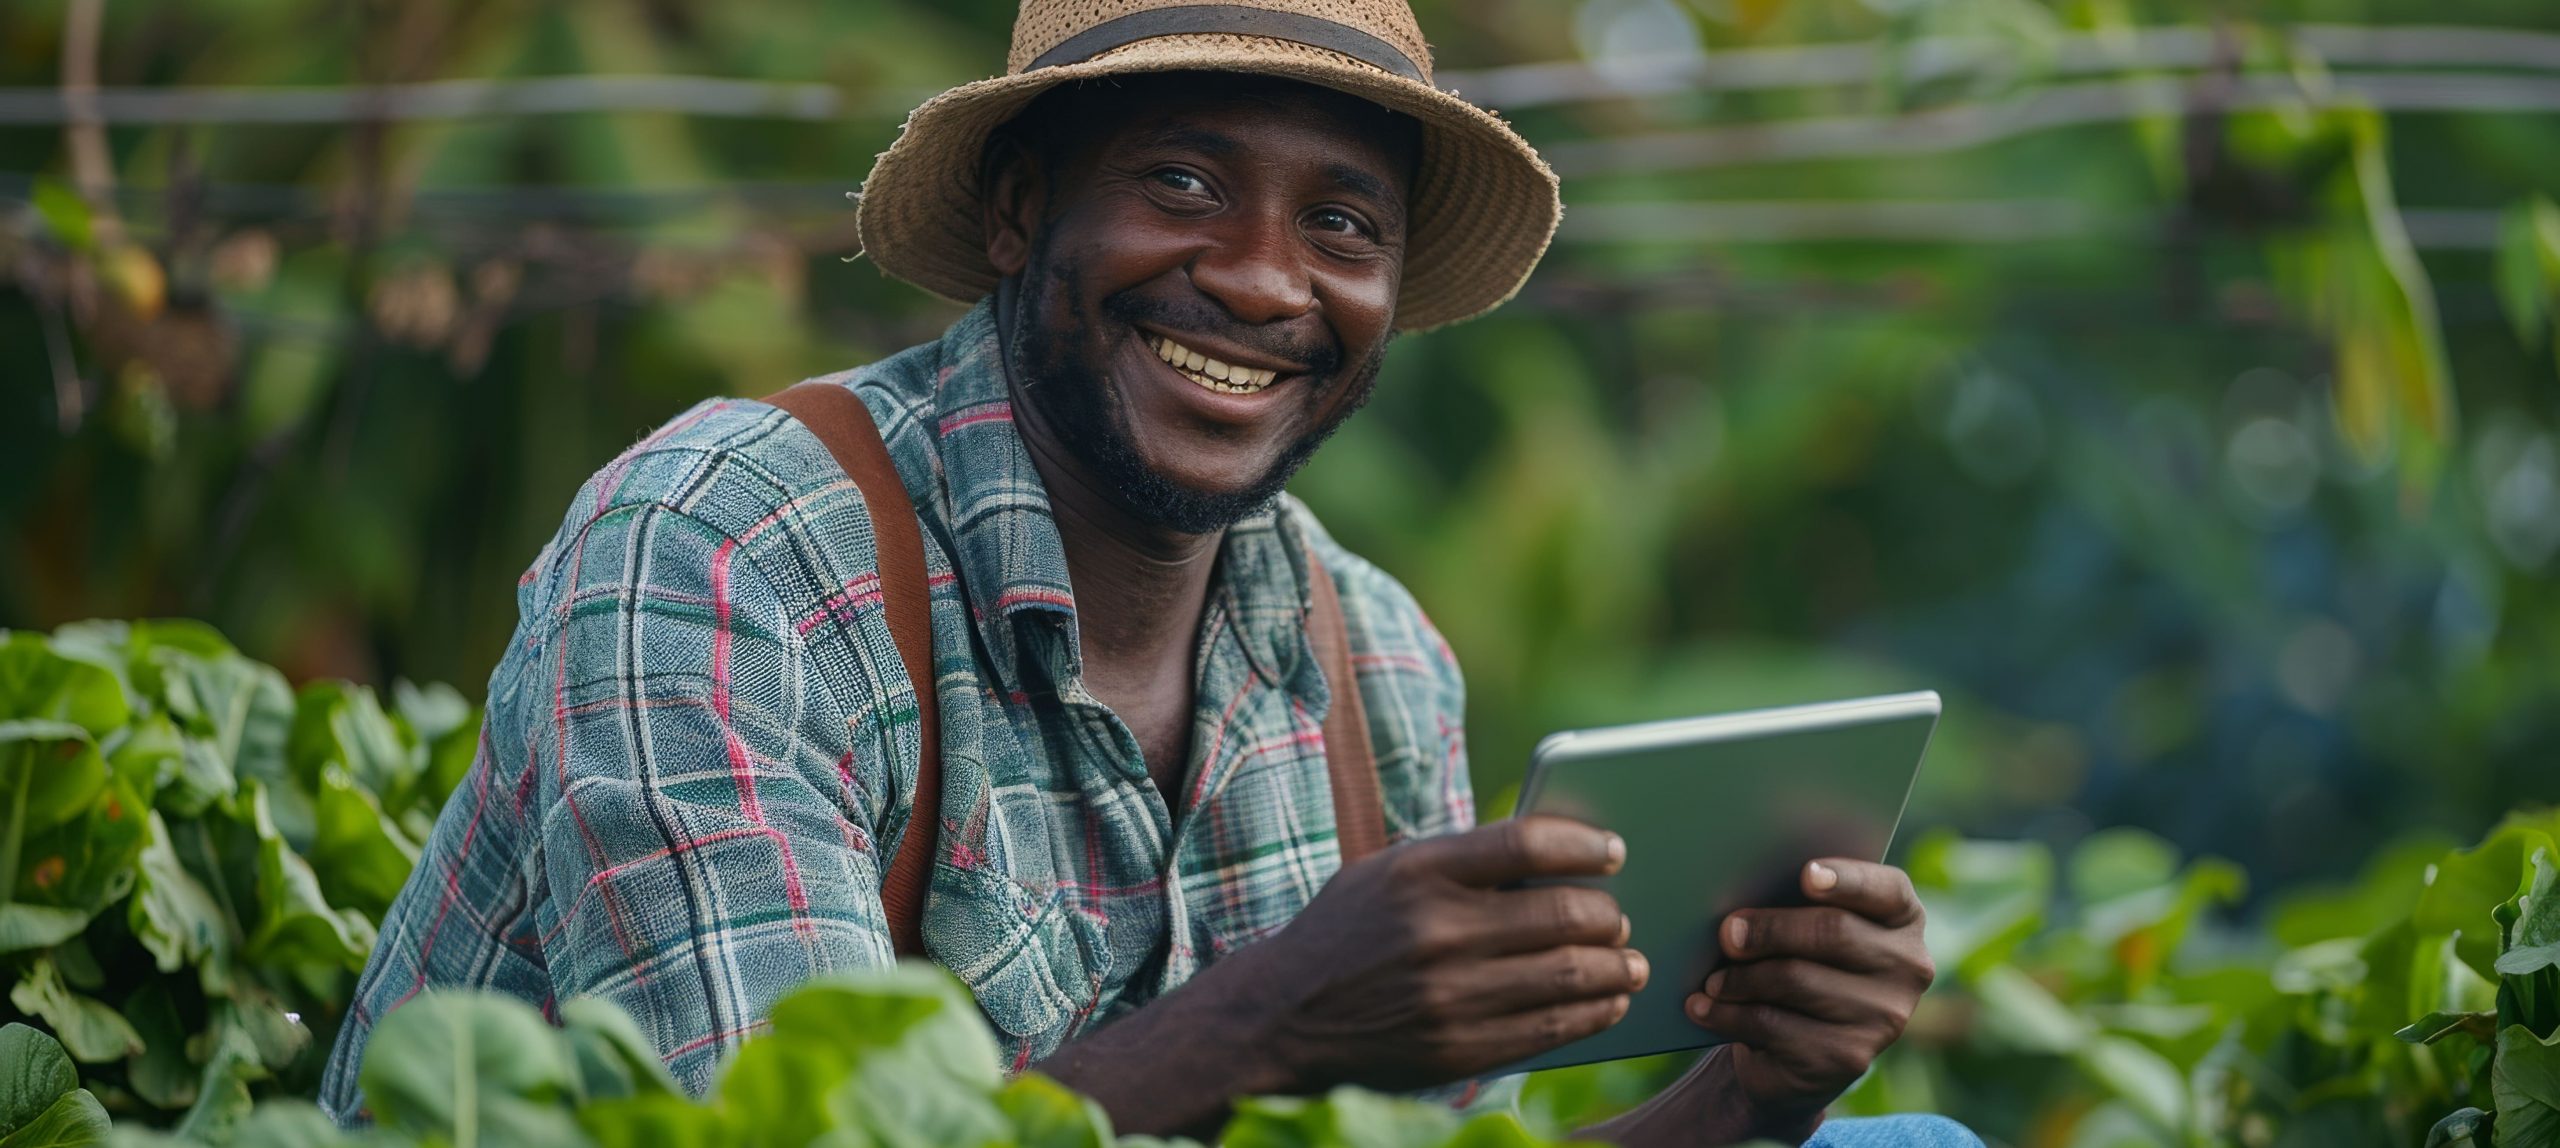 Foto de um jovem homem negro com vestes de trabalhador rural agachado em uma plantação. Ela está sorrindo segurando um tablet em suas mãos, ilustrando que o agricultor está manuseando um um software agrícola para gerenciar sua documentação.